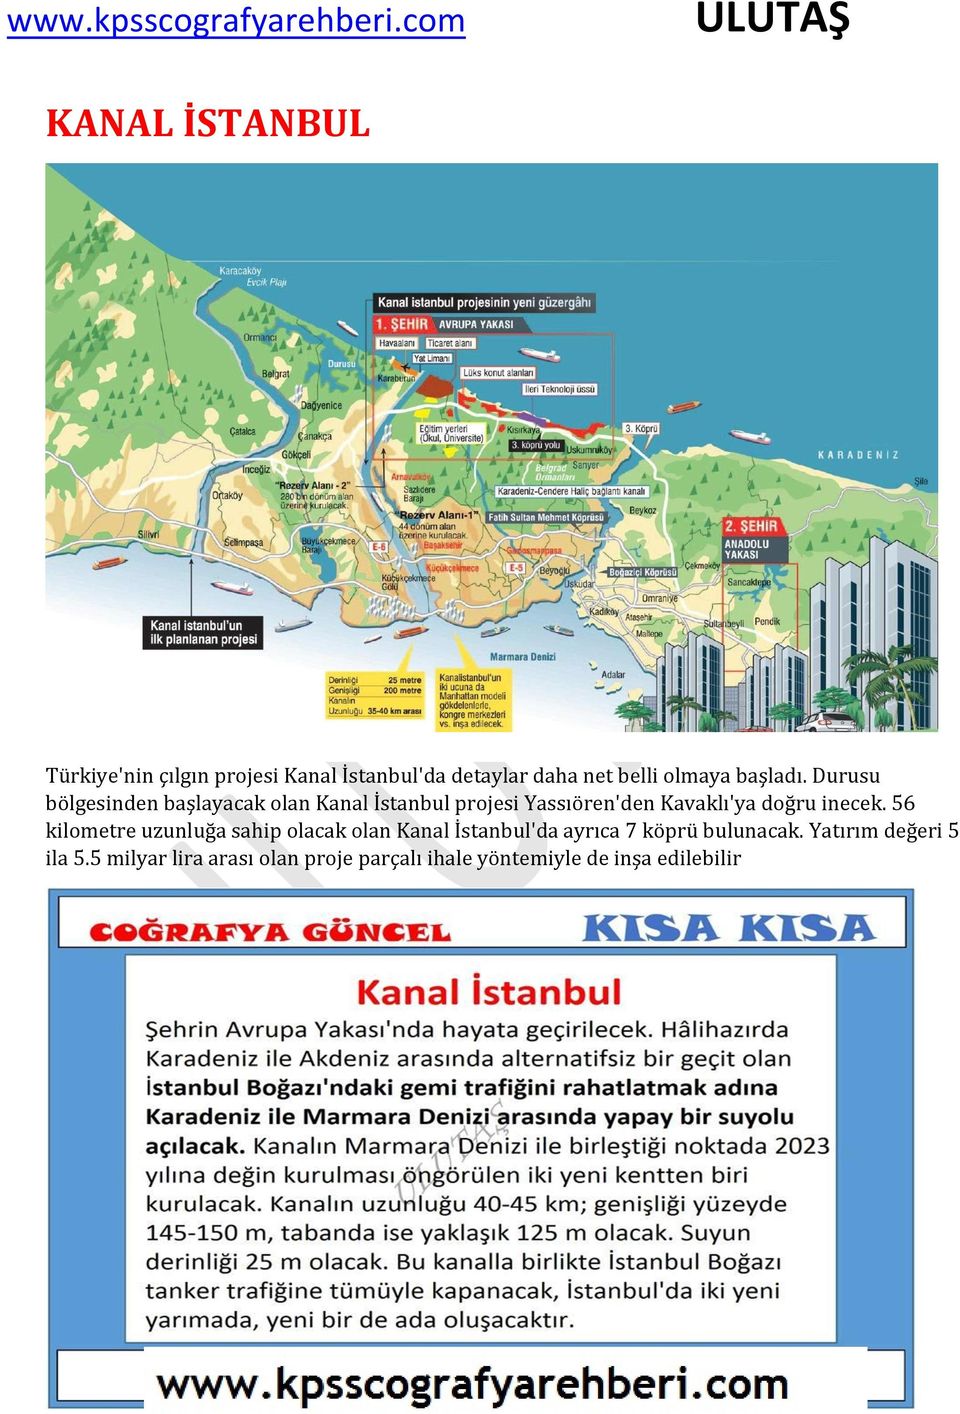 56 kilometre uzunluğa sahip olacak olan Kanal İstanbul'da ayrıca 7 köprü bulunacak.